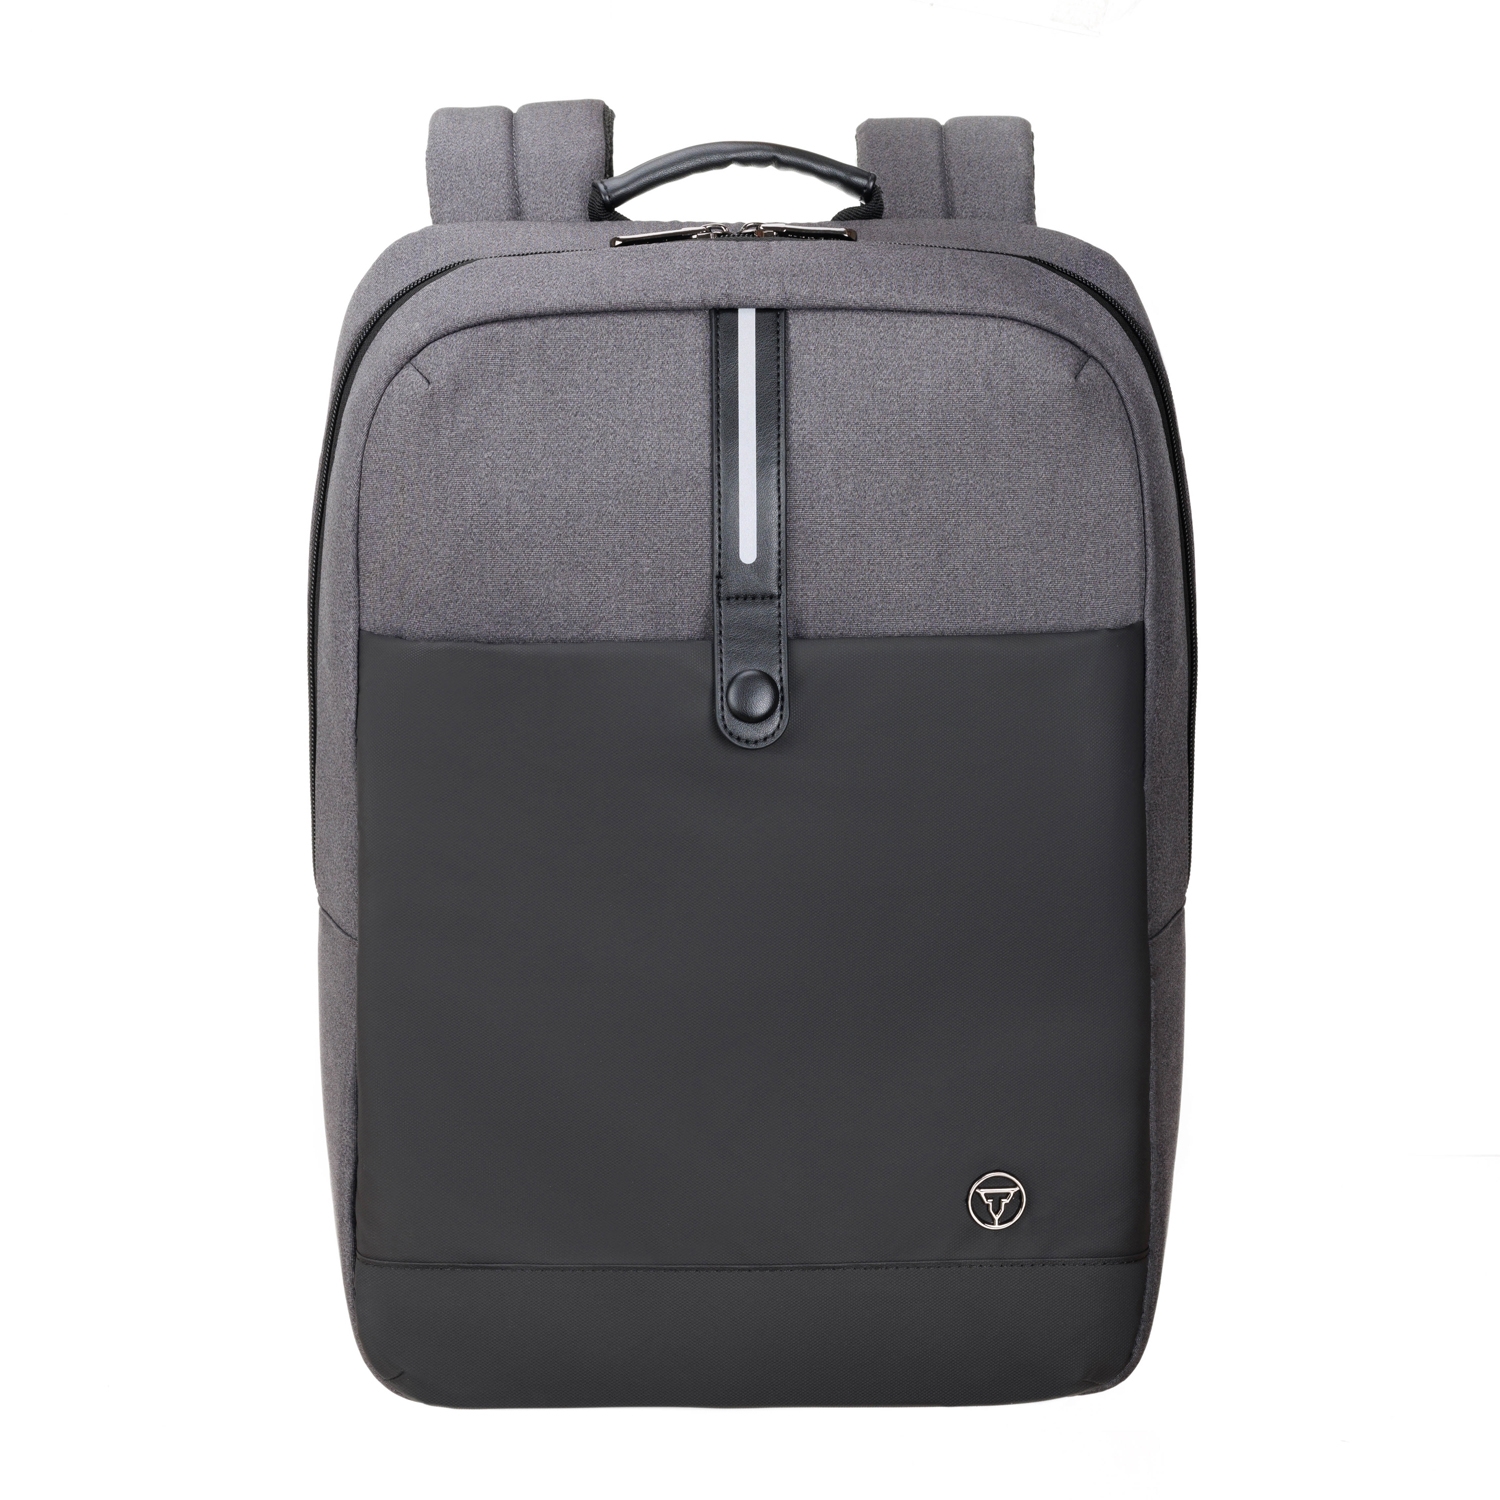 Рюкзак TORBER VECTOR с отделением для ноутбука 14,1", черный/серый, нейлон, 32 х 10 х 43 см, 13л, черный